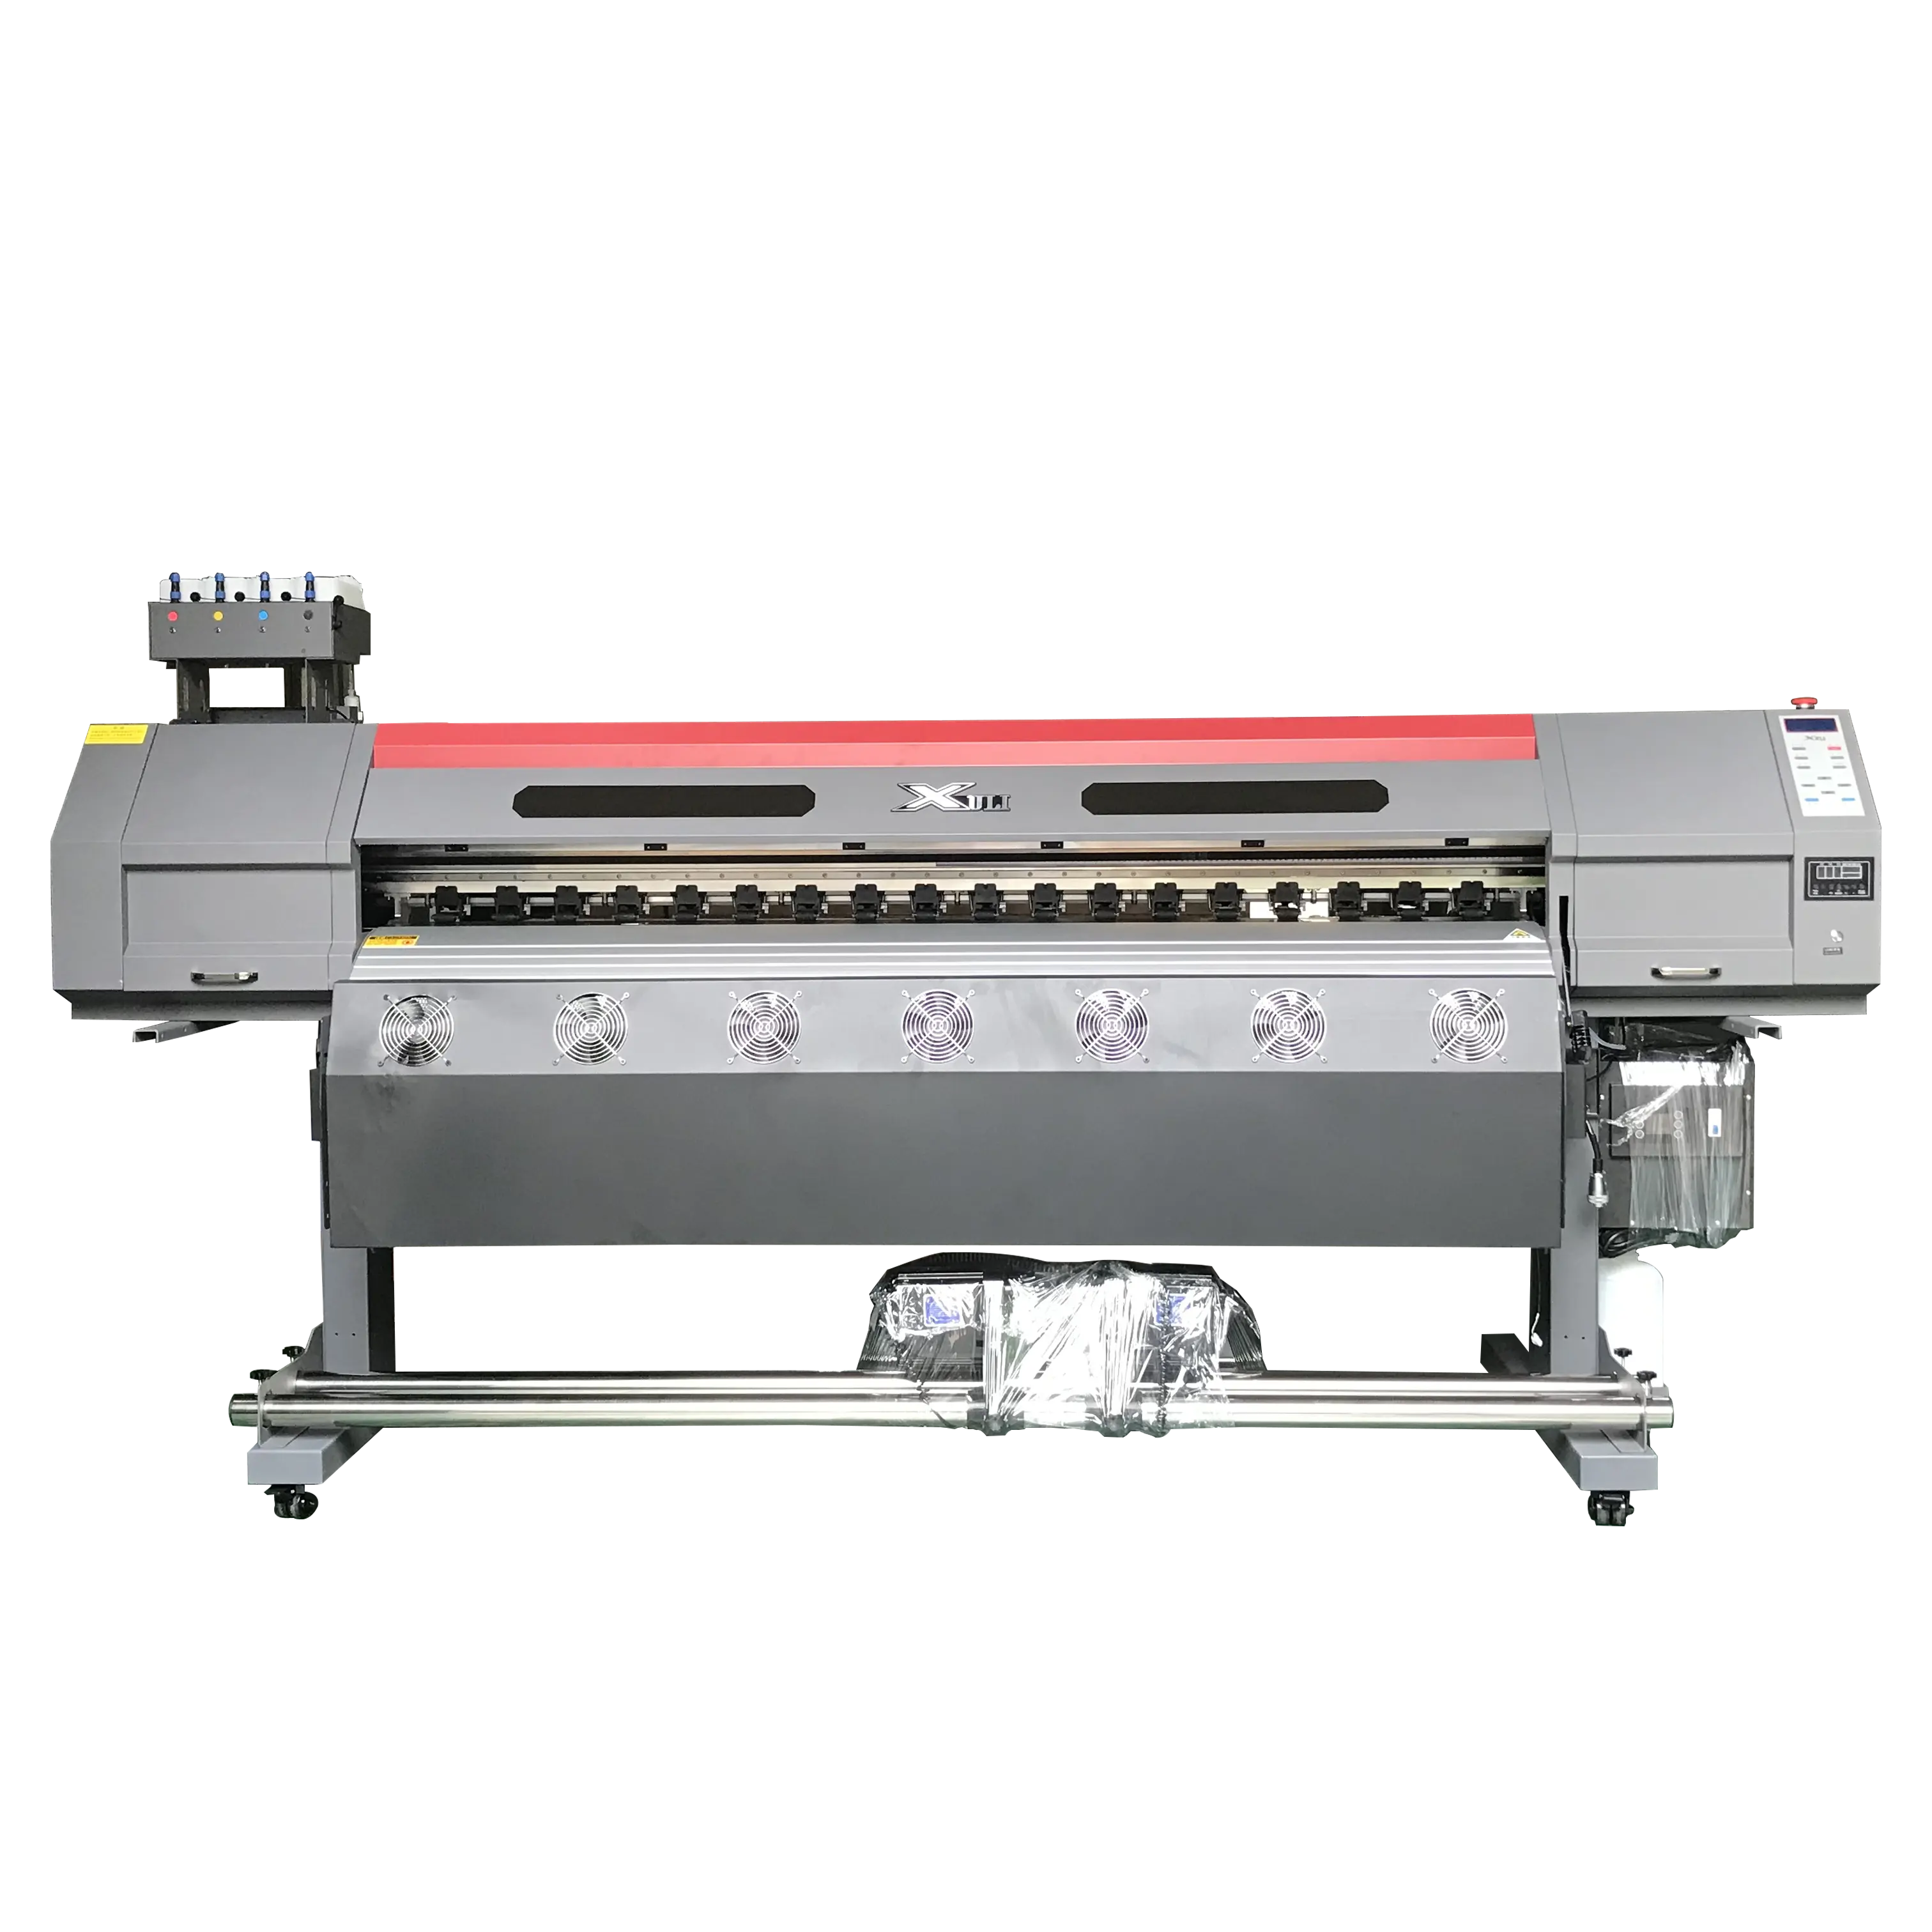 I3200 헤드 6ft 에코 솔벤트 프린터가있는 고품질 에코 솔벤트 잉크젯 프린터